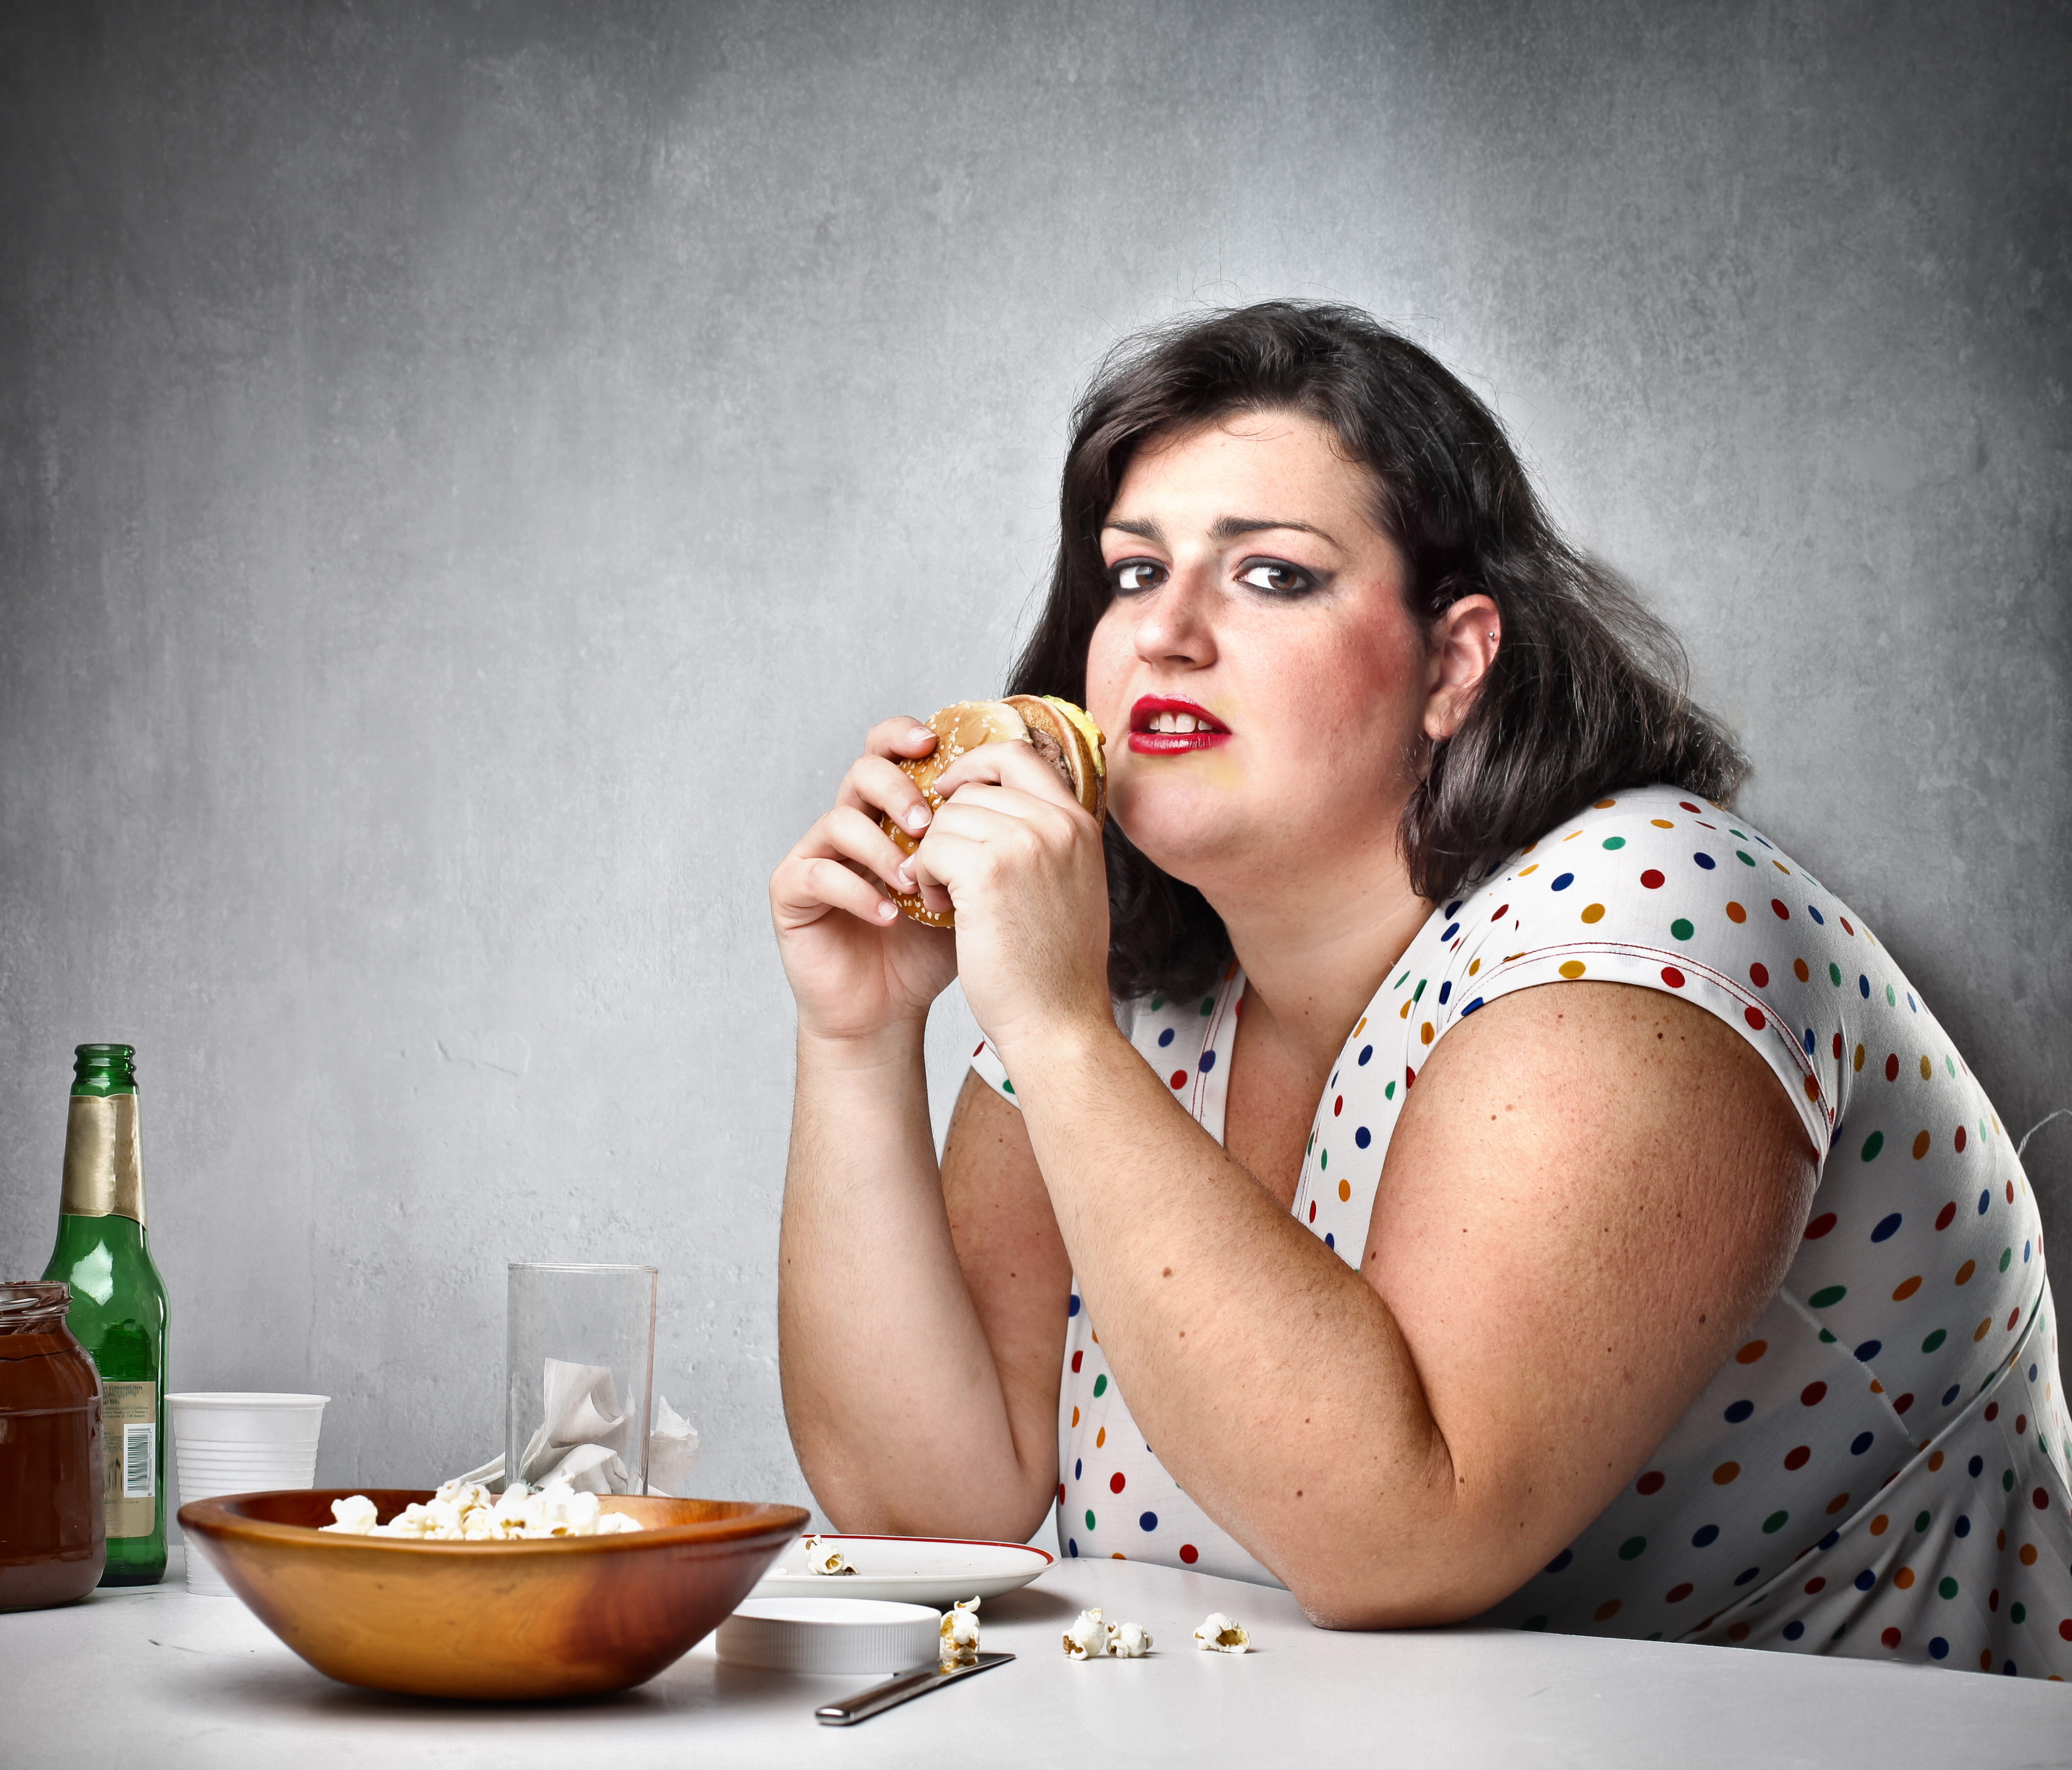 Сайт толстый женщина. Женщина с избыточным весом.